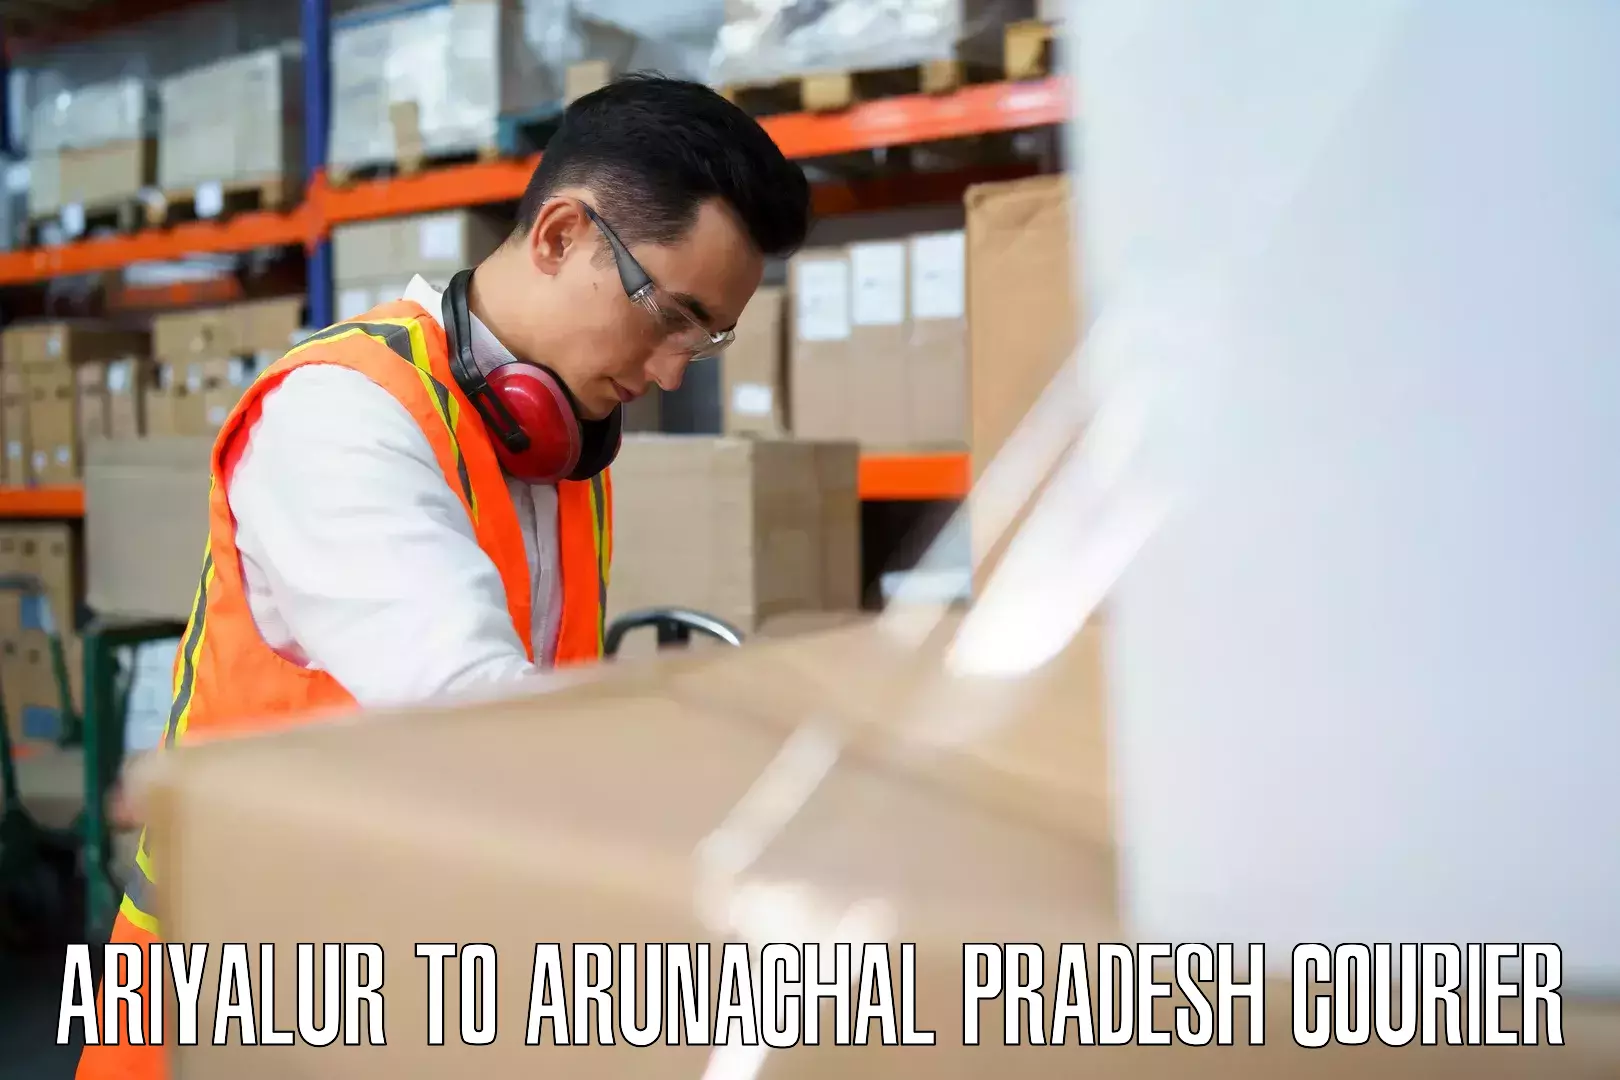 Baggage courier service Ariyalur to Lower Subansiri